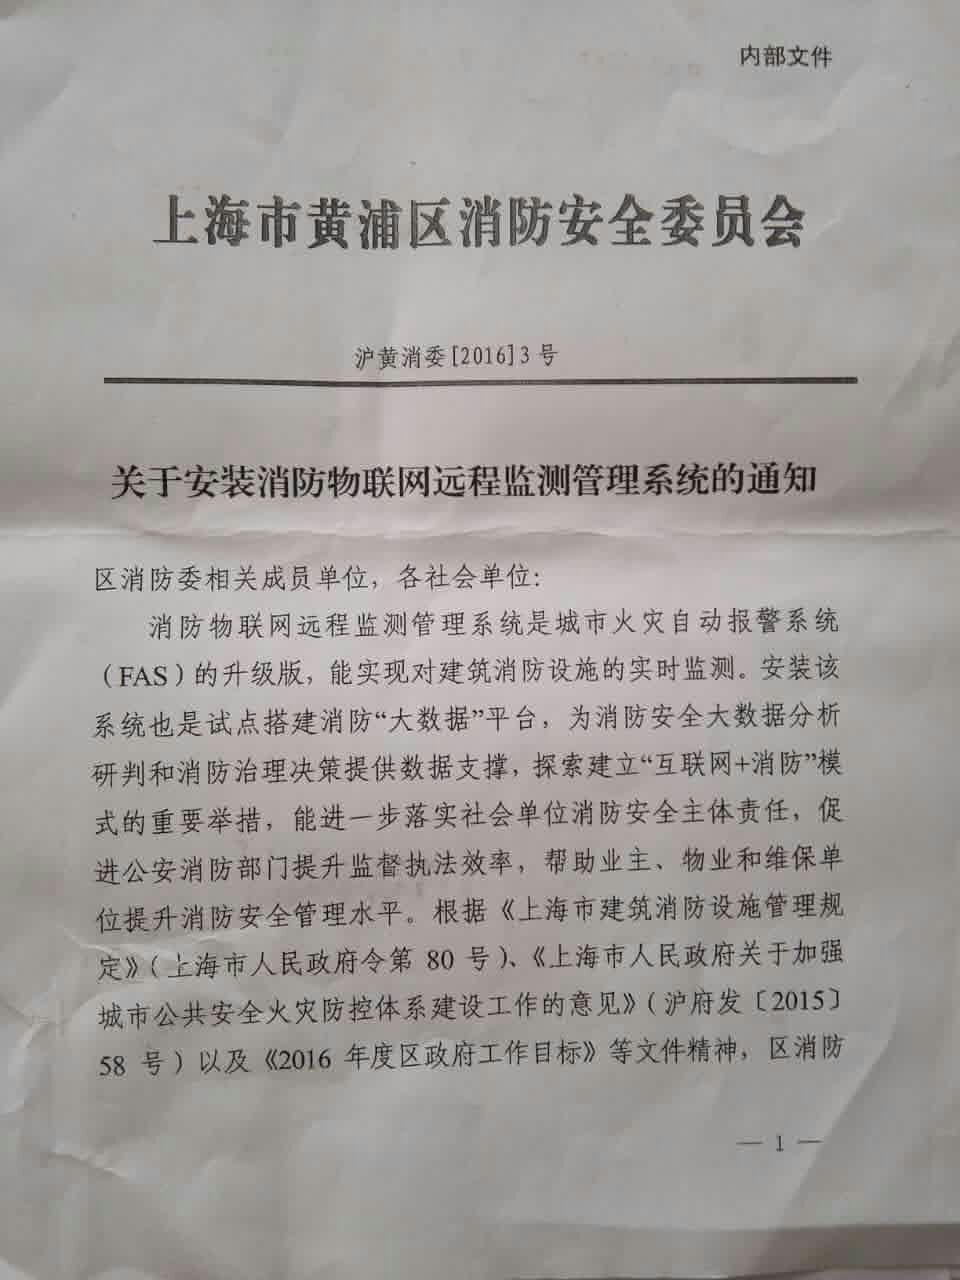 上海市黃浦區關于安裝消防遠程聯網的通知